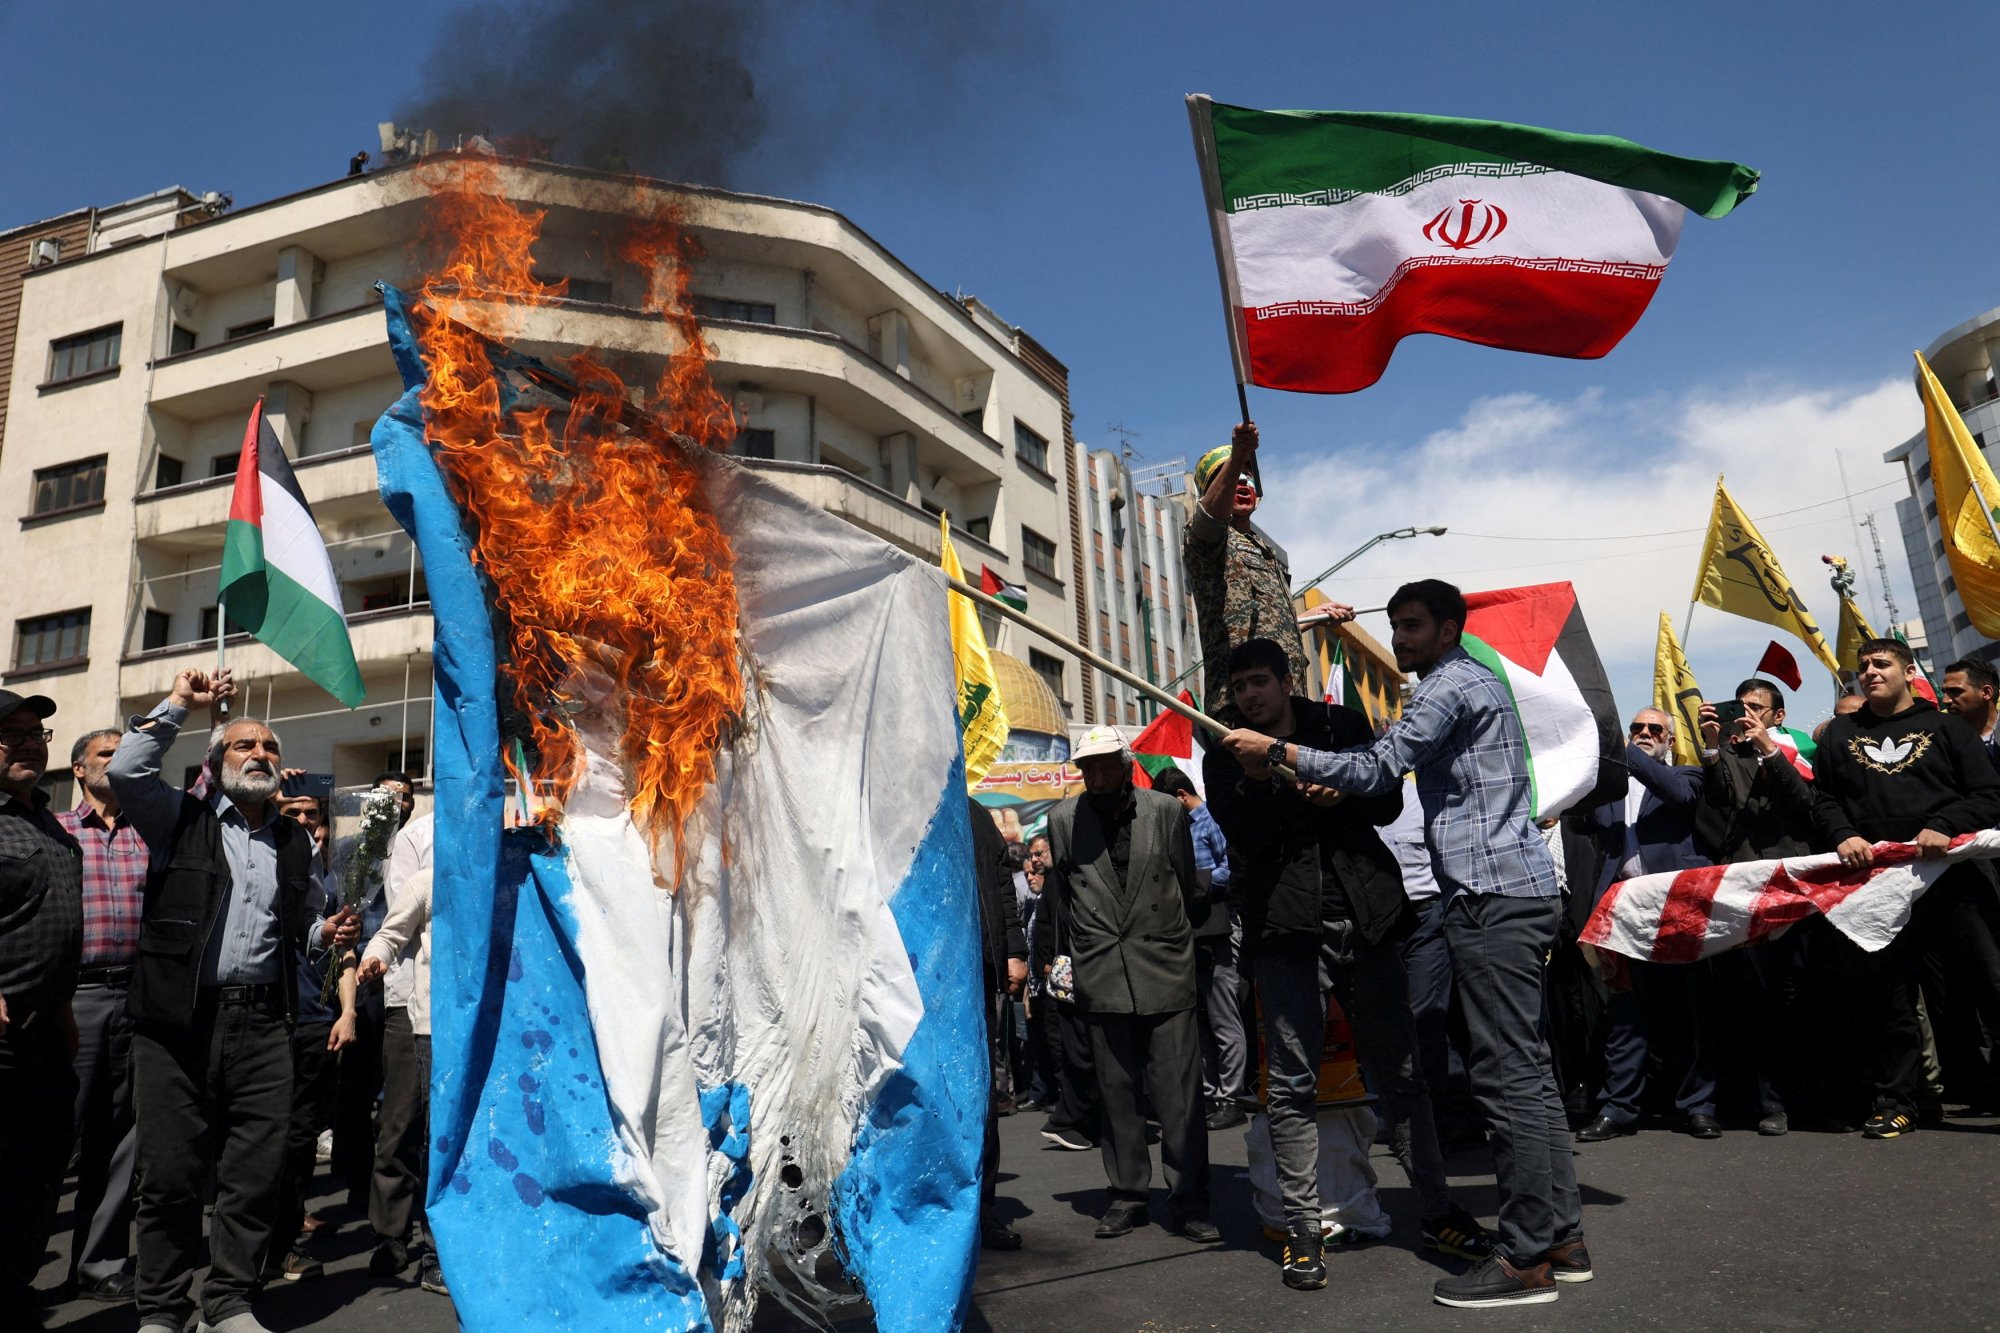 Το Ιράν αναμένεται να επιτεθεί στο Ισραήλ ανά πάσα στιγμή - Φόβοι διεθνούς σύρραξης